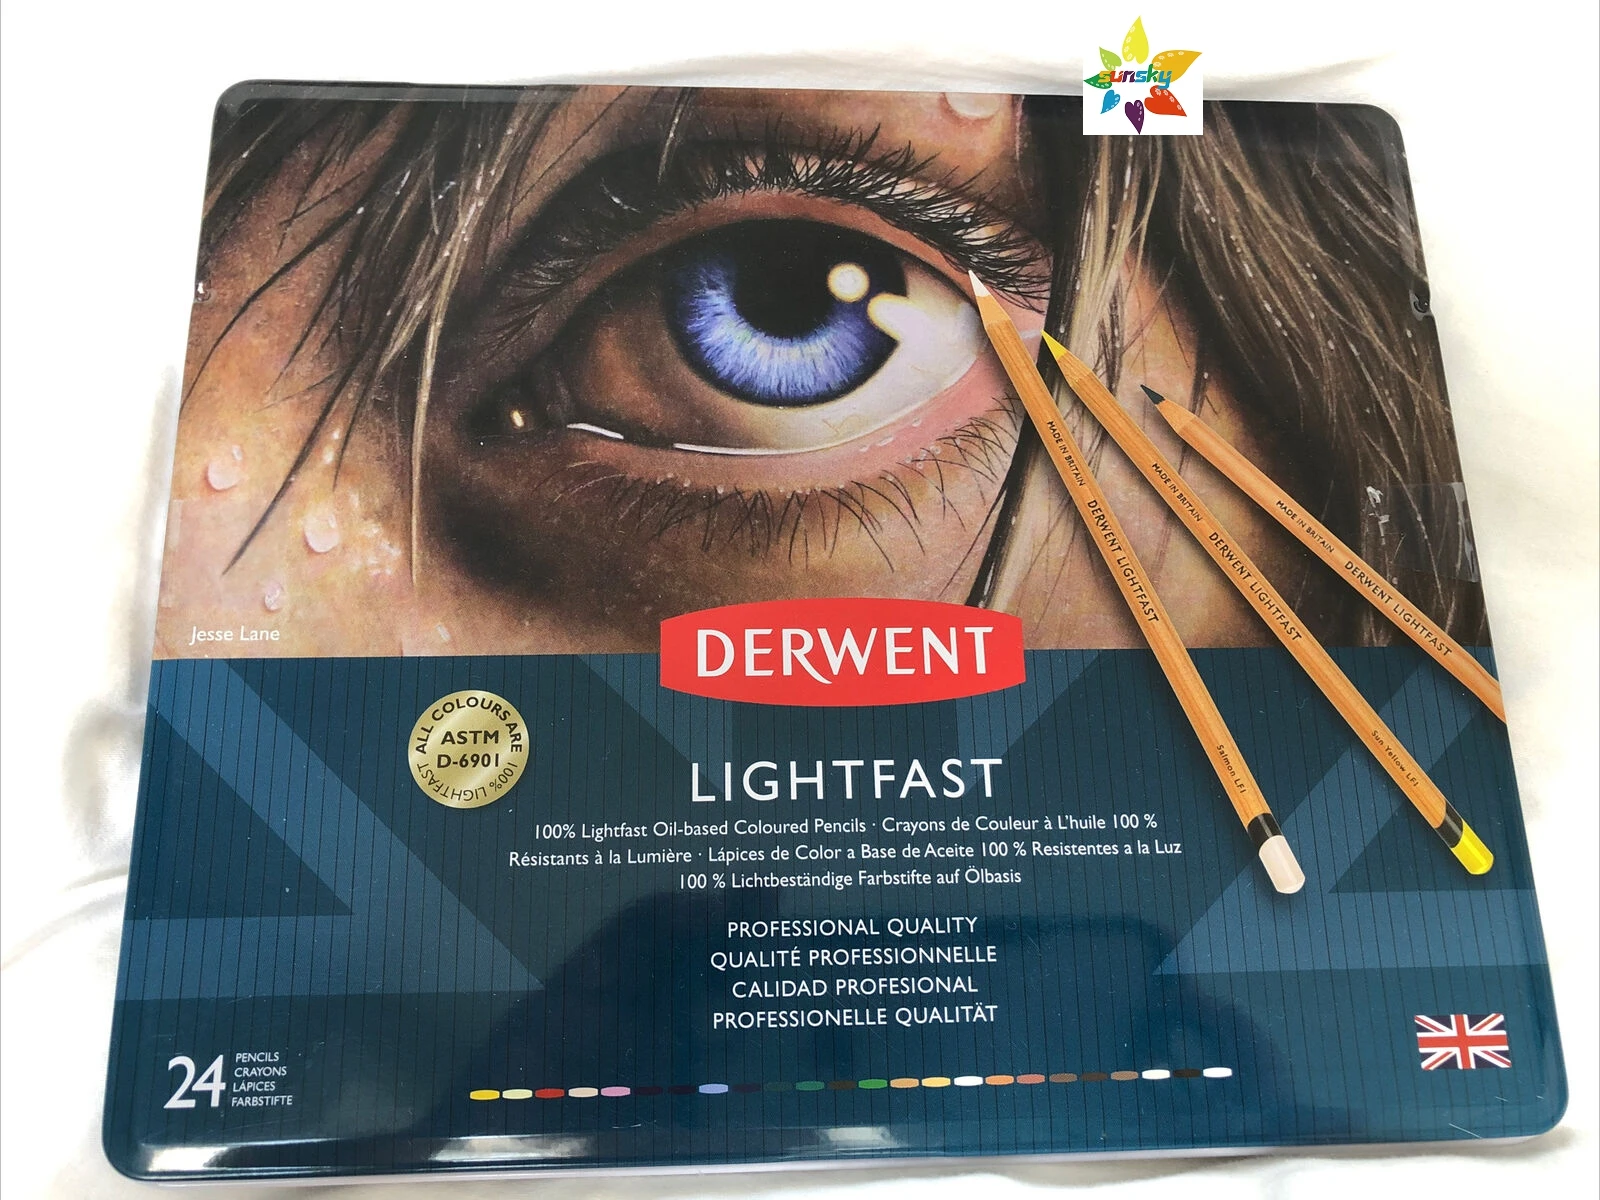 Derwent Lightfast Spalvoti Pieštukai Menininkas Piešimo, Tapybos Profesionalus 24 spalvos,4mm aliejaus pagrindu core,idealiai tinka detalūs brėžiniai